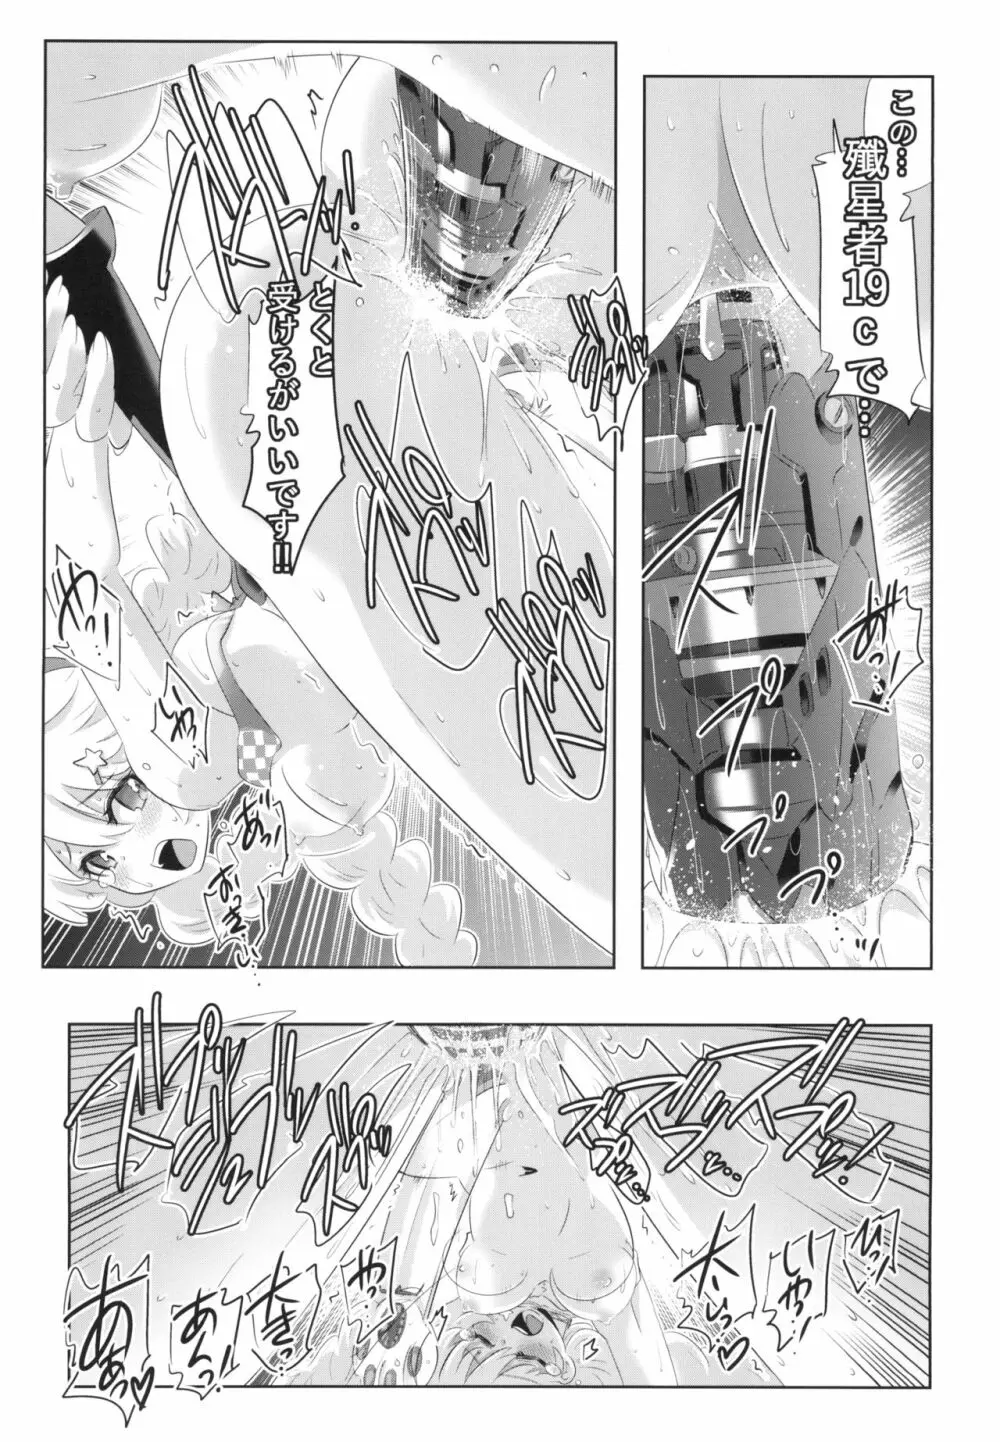 崩壊世界のキアナブローニャ メイから始める姫子ハーレム3 13ページ